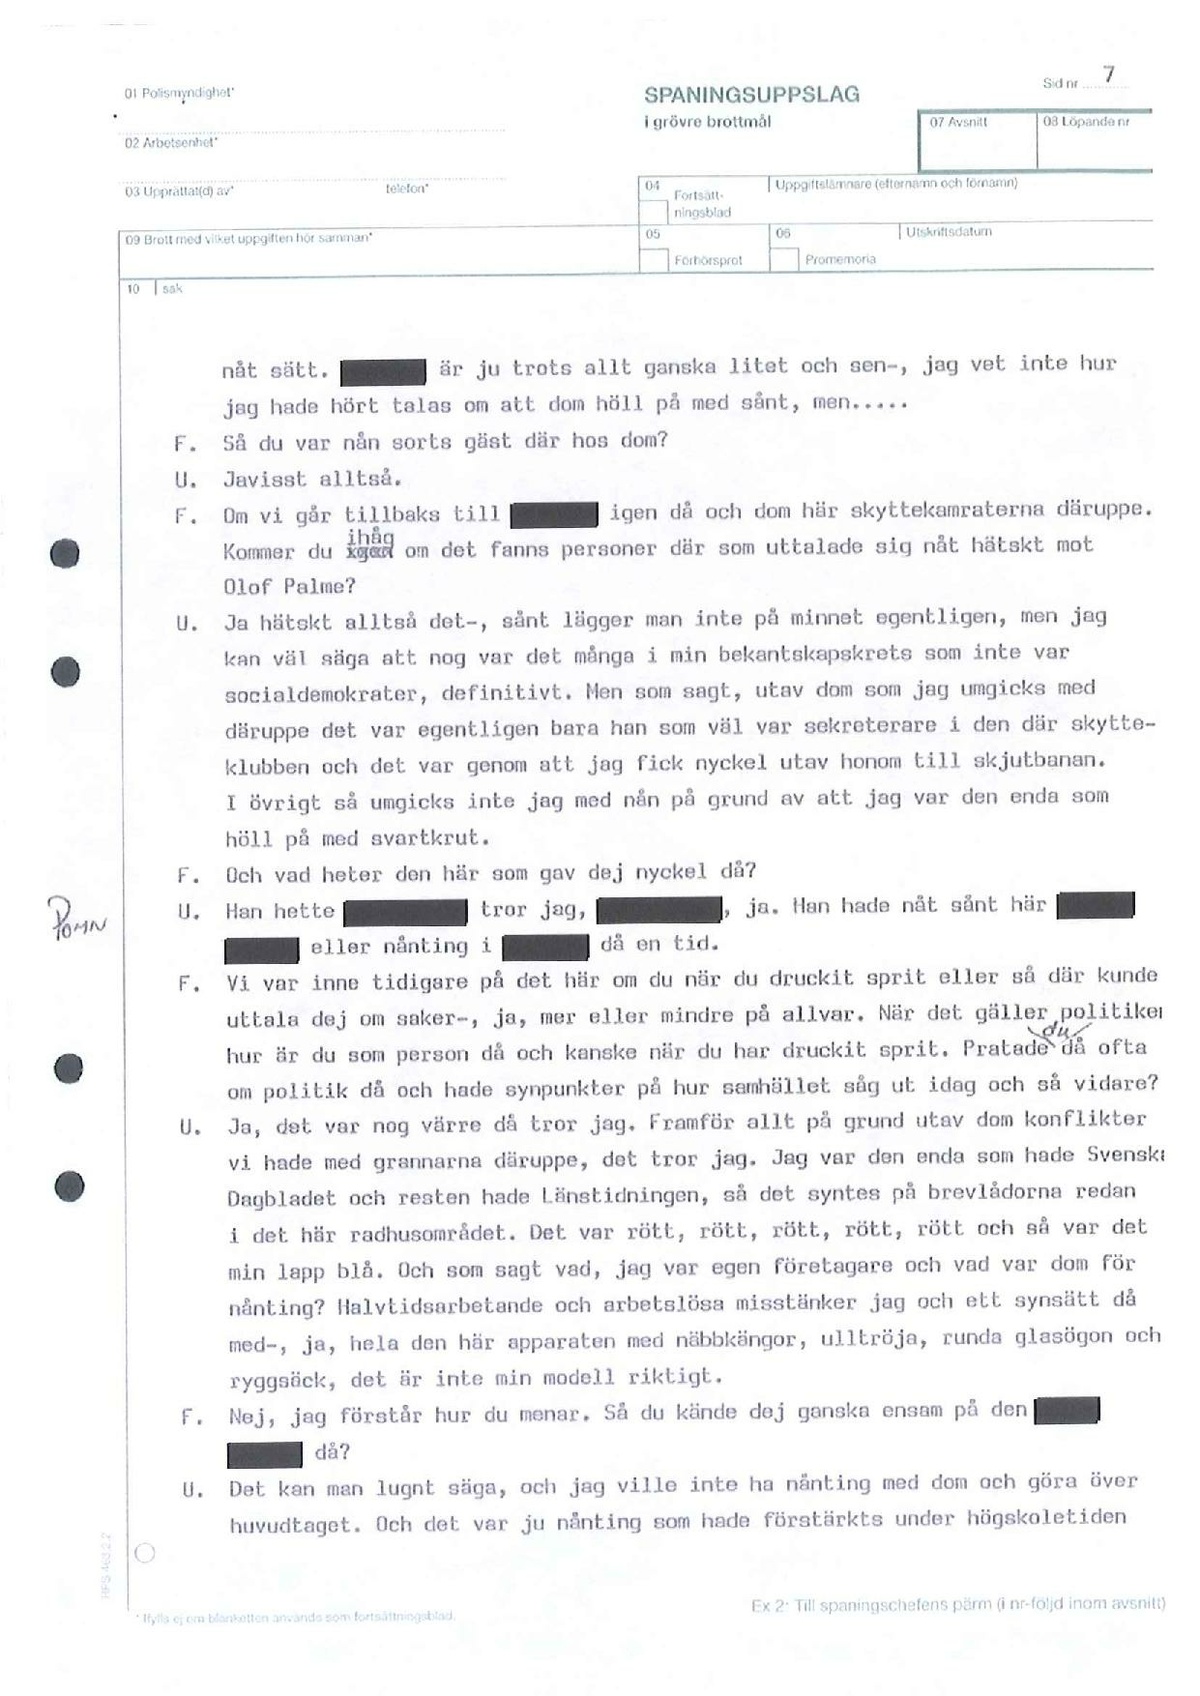 Pol-1993-09-14 1000 D11614-01-C Utriainen-Brunflo-skytteklubb-AGAG-Magnumklubben.pdf